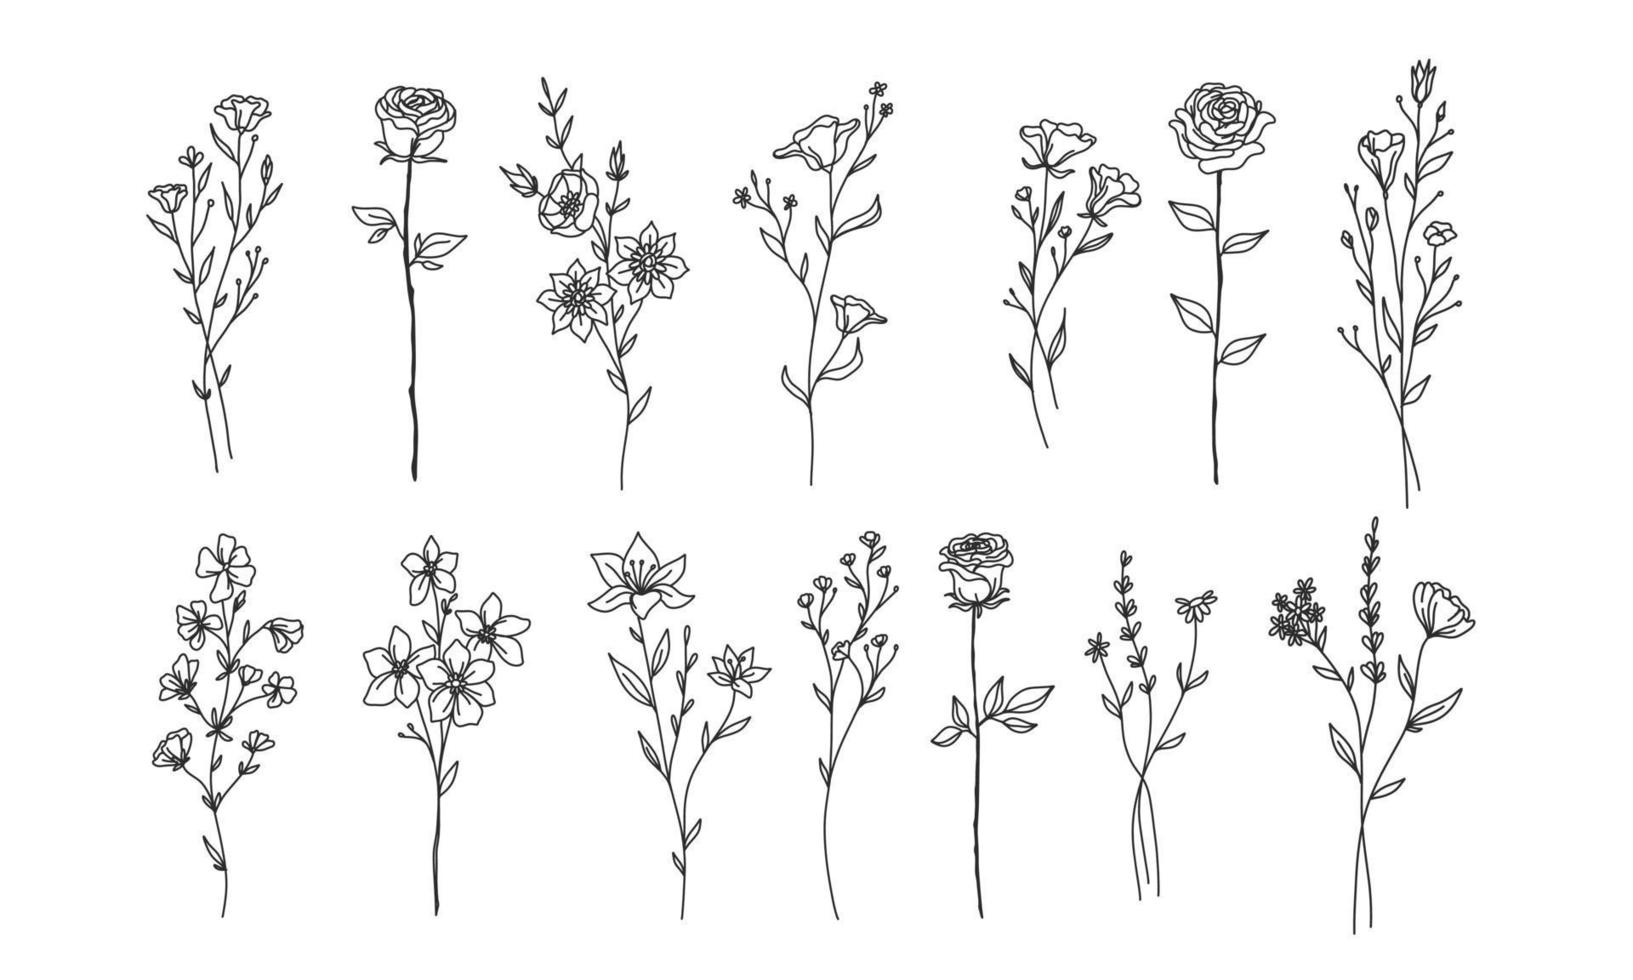 conjunto de elementos florales dibujados a mano para su diseño, ilustración de hojas y flores para crear un diseño romántico o vintage, gráfico aislado de plantas muy fácil de agregar a su proyecto de diseño vector